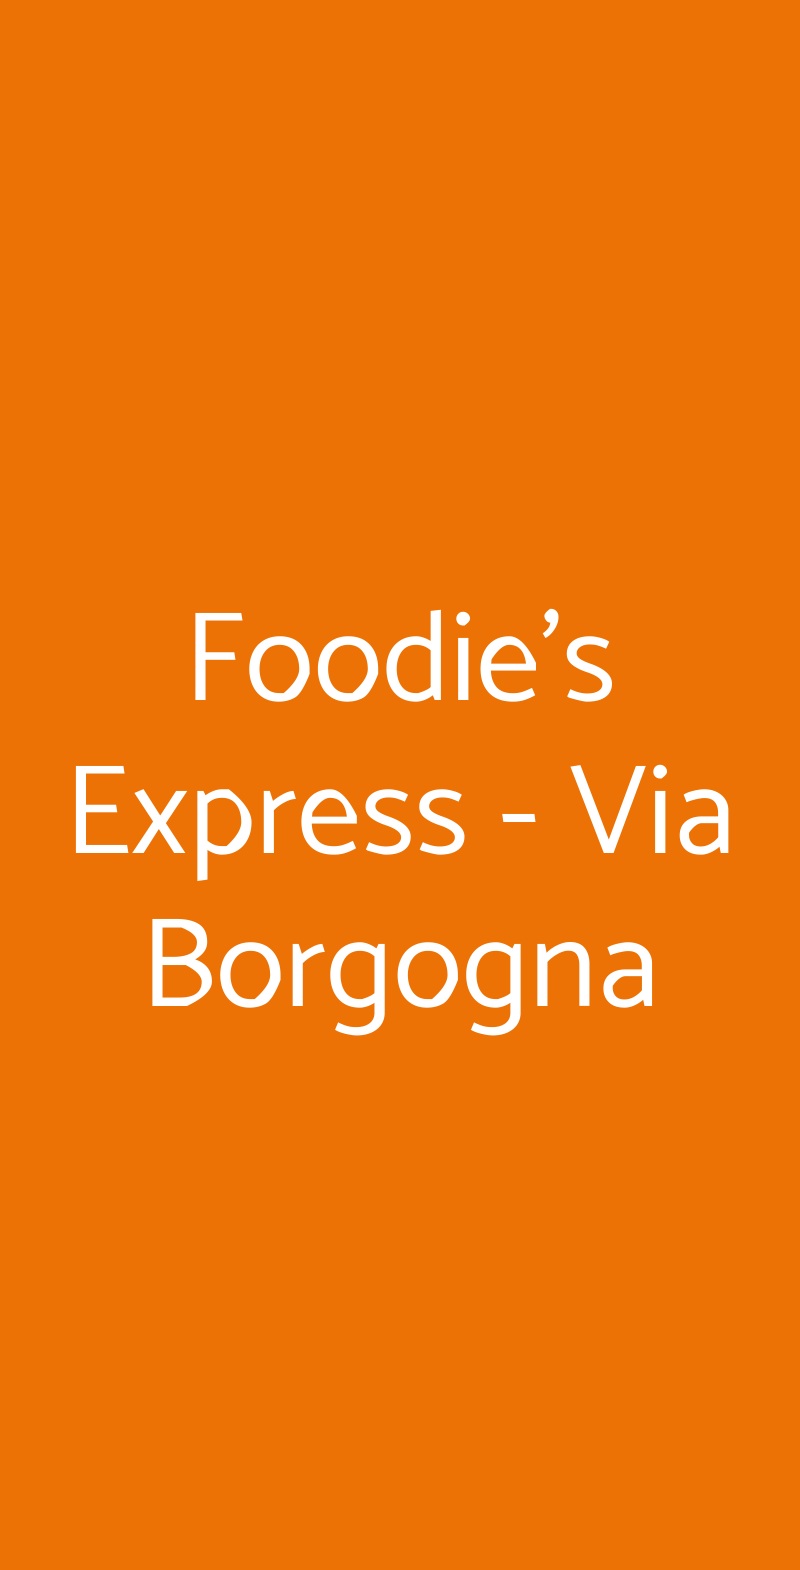 Foodie's Express - Via Borgogna Milano menù 1 pagina